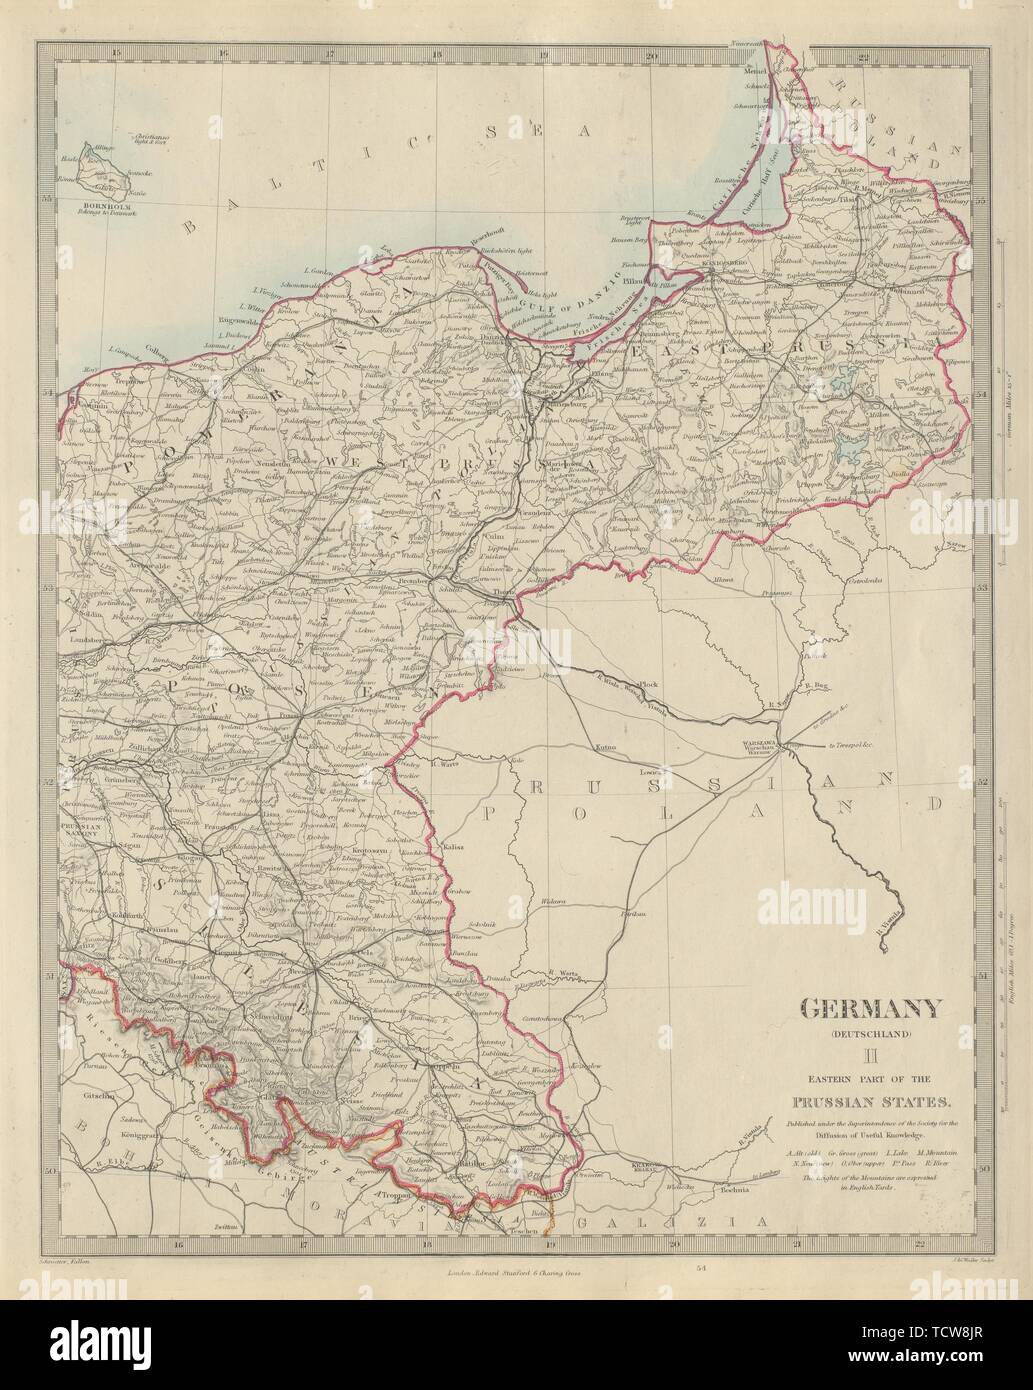 GERMANY DEUTSCHLAND Eastern Prussian States Silesia Pomerania. SDUK 1874 map Stock Photo